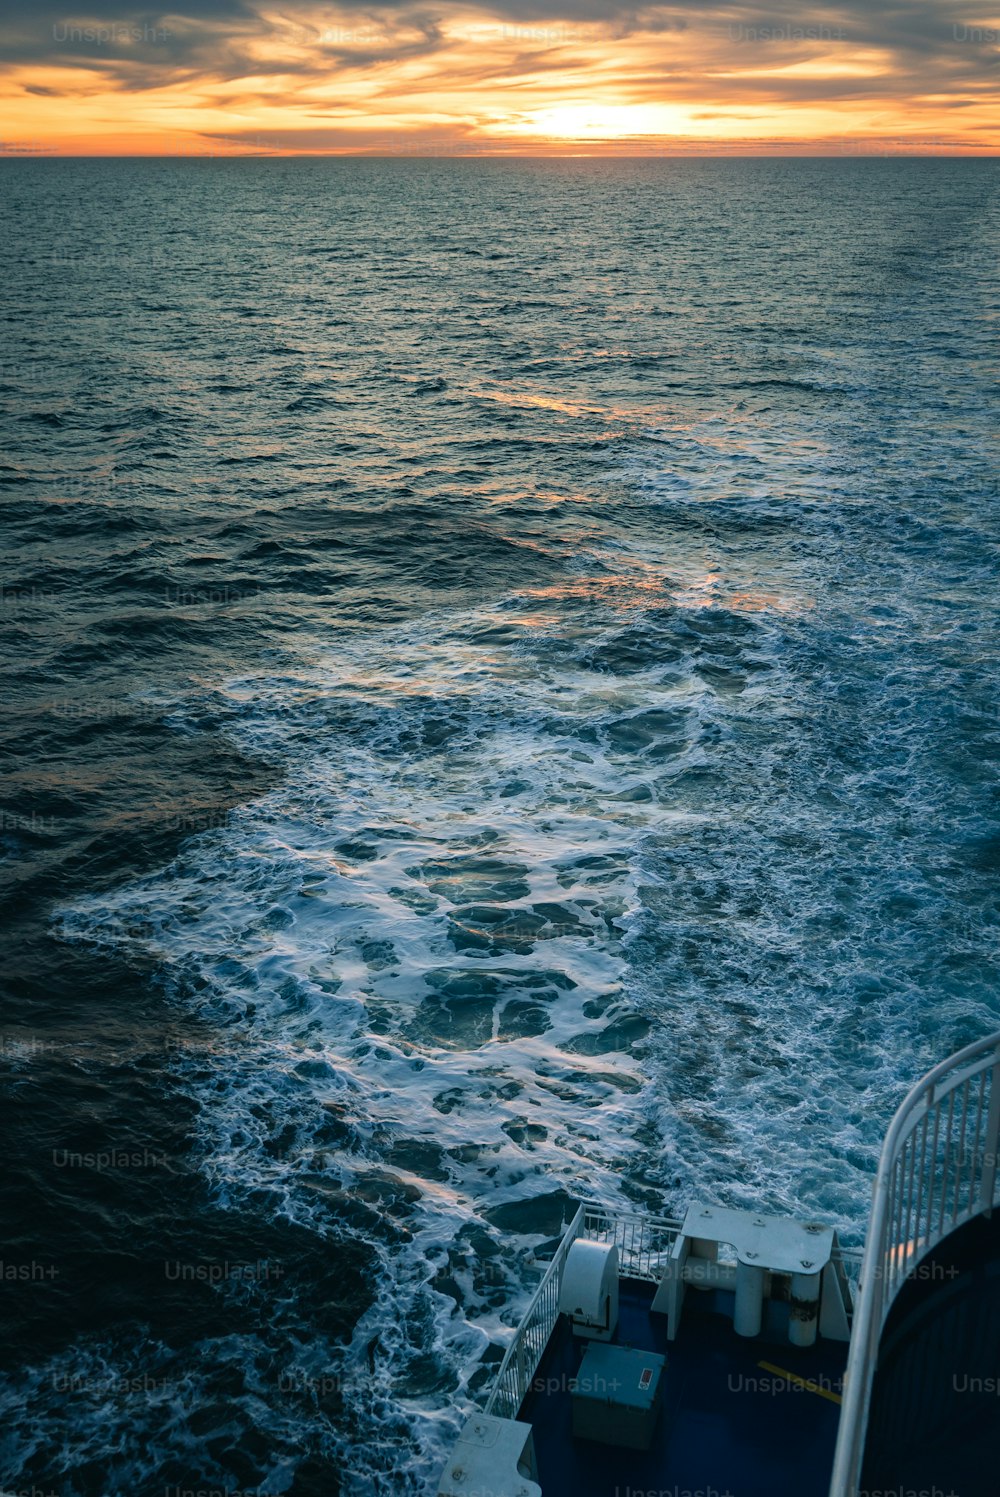 Die Sonne geht über dem Ozean unter, wie von einem Boot aus gesehen